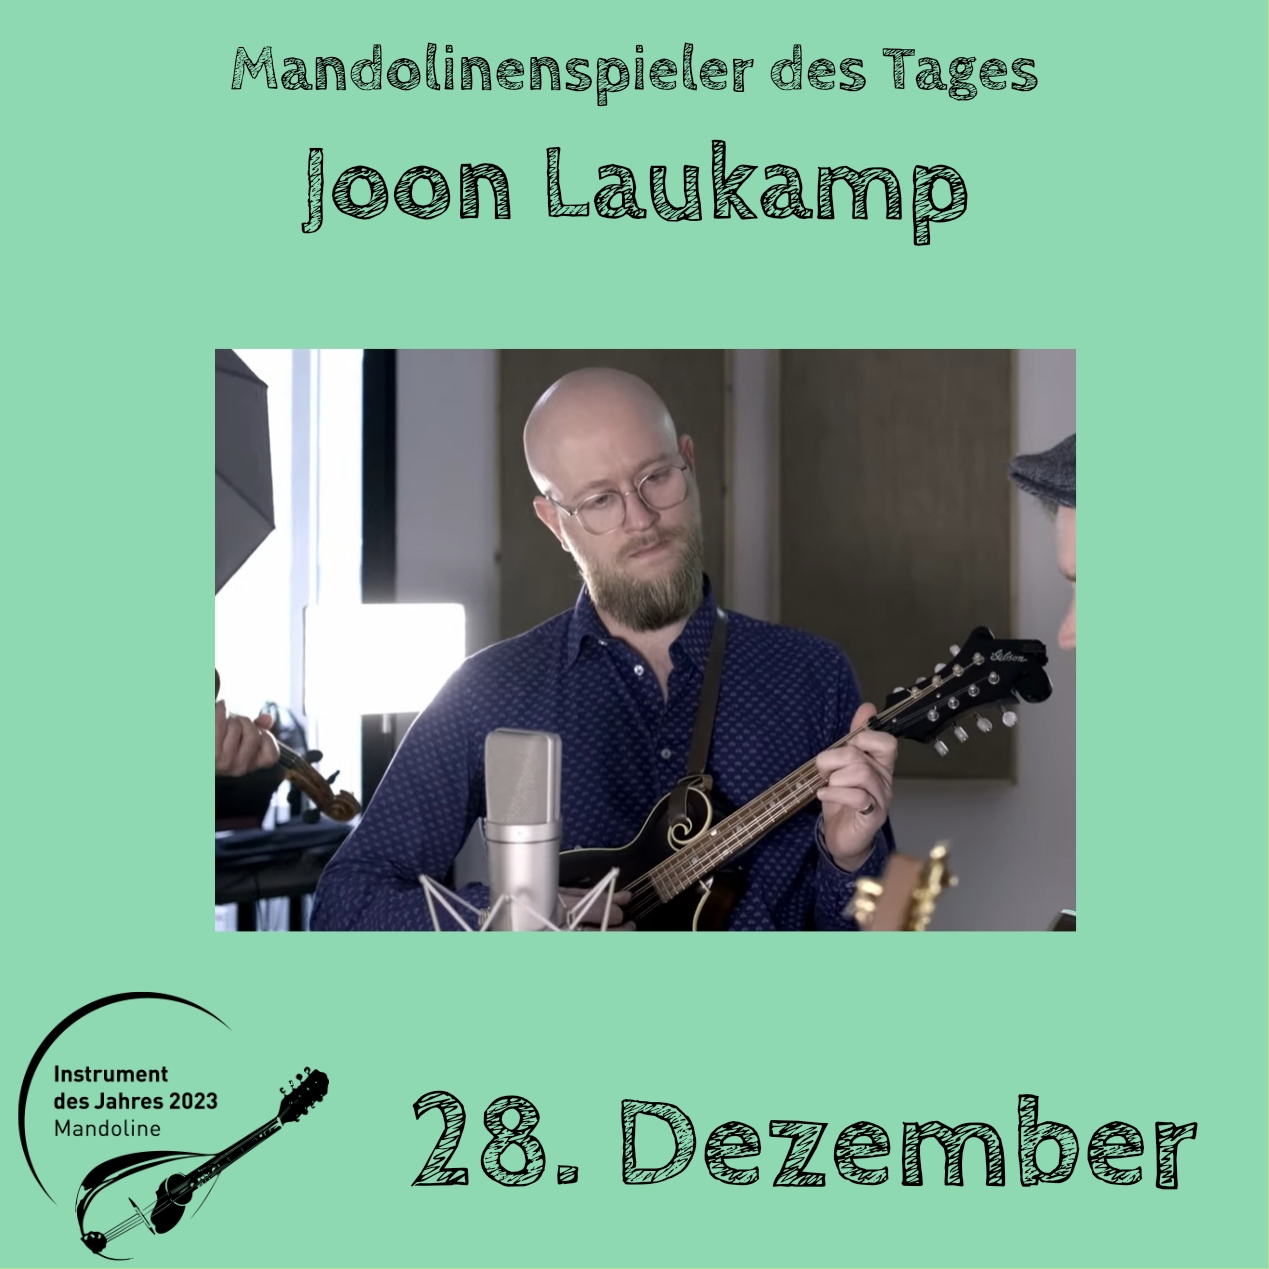 28. Dezember - Joon Laukamp Instrument des Jahres 2023 Mandolinenspieler Mandolinenspielerin des Tages